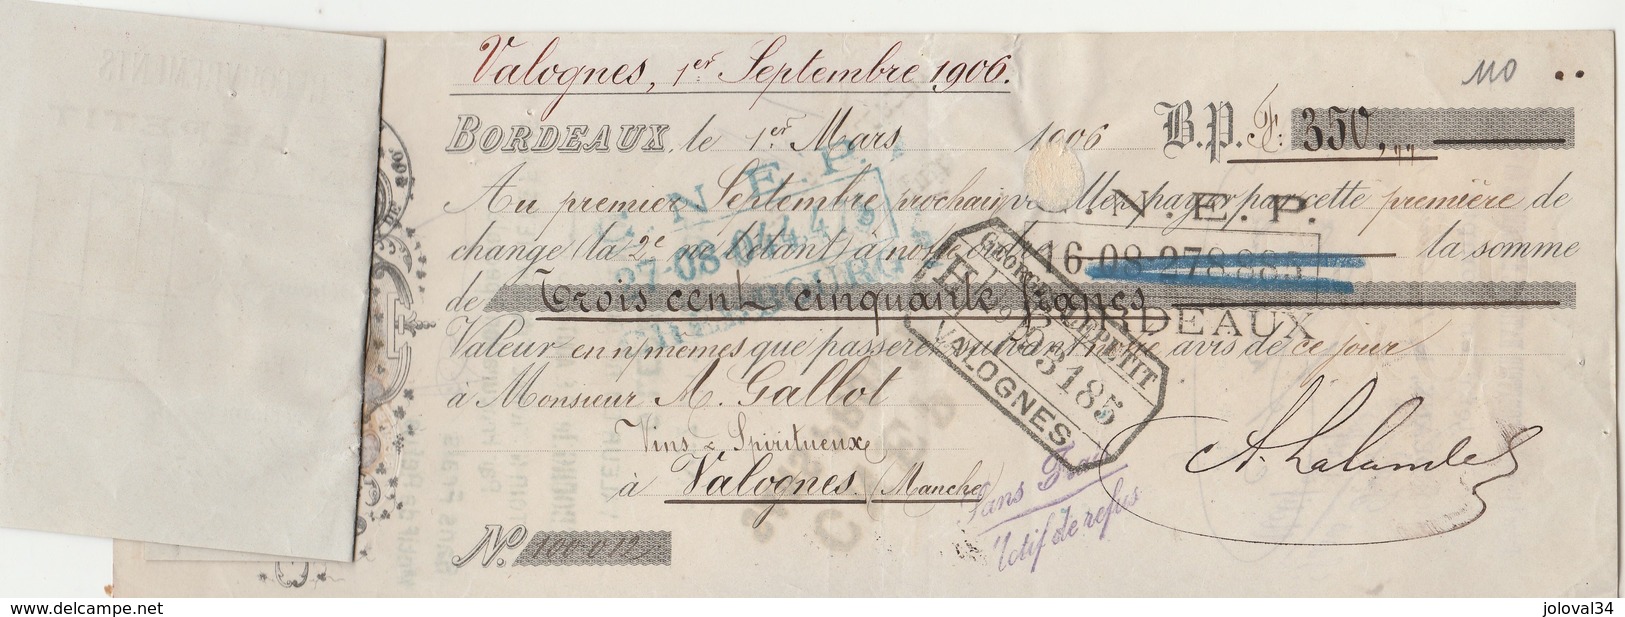 Lettre Change 1/3/1906 LALANDE Vins BORDEAUX Gironde Avec étiquette Georges LEPETIT Valognes Manche - Gallot - Bills Of Exchange